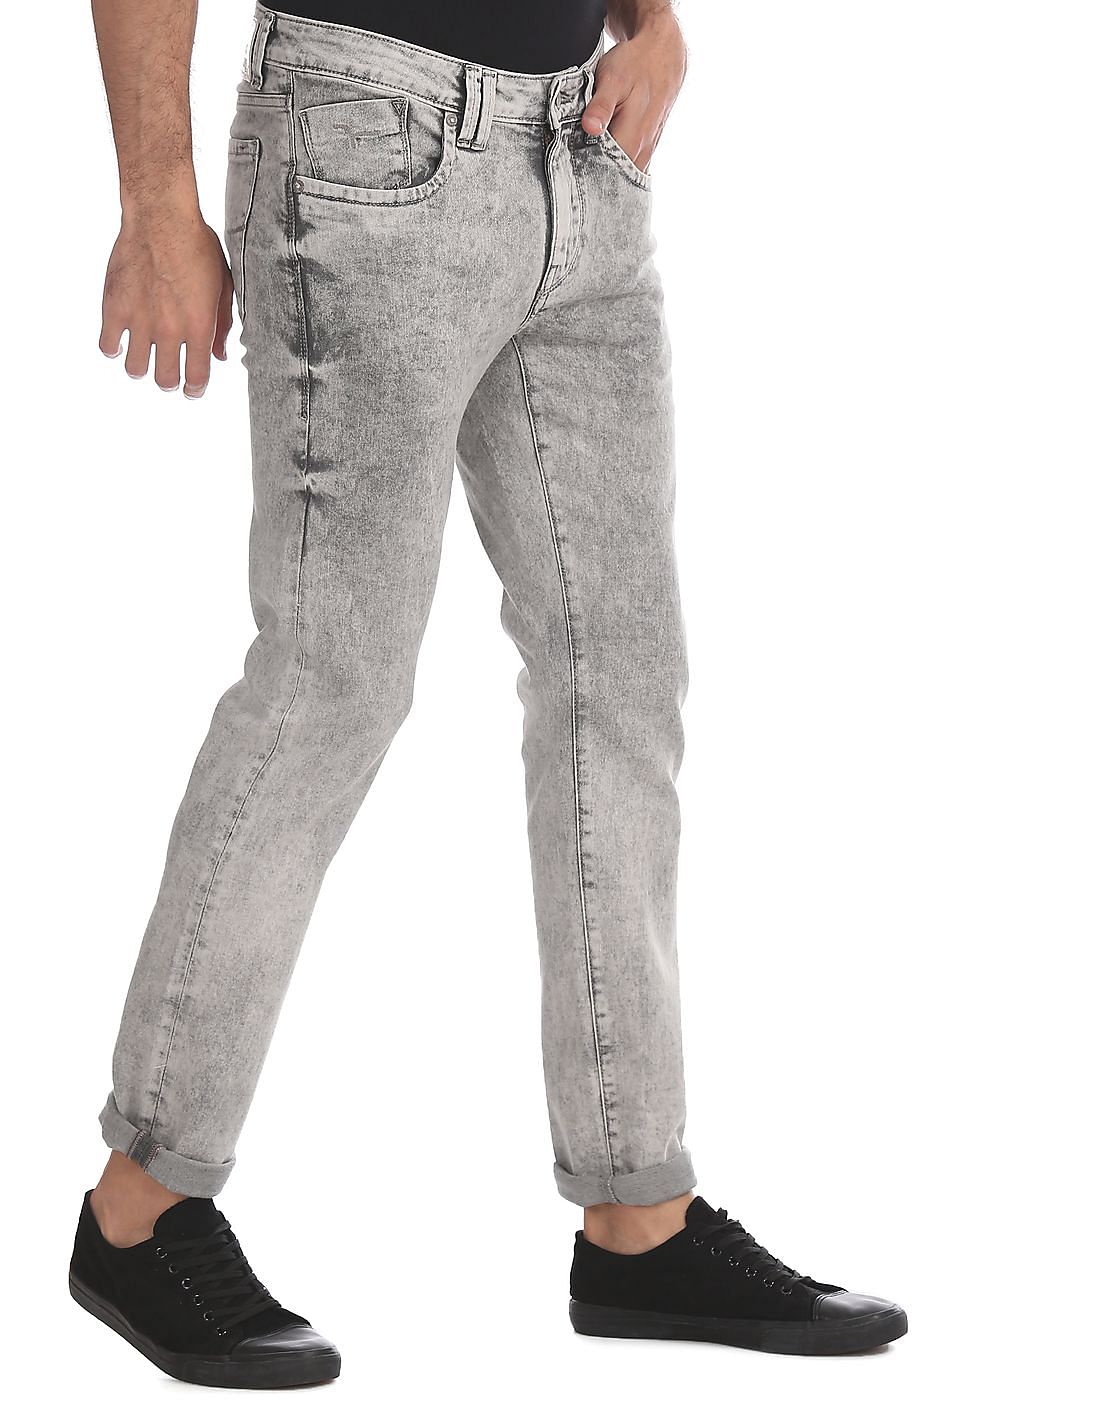 Forbløffe hun er Pris Buy Men Grey Jackson Skinny Fit Acid Wash Jeans online at NNNOW.com